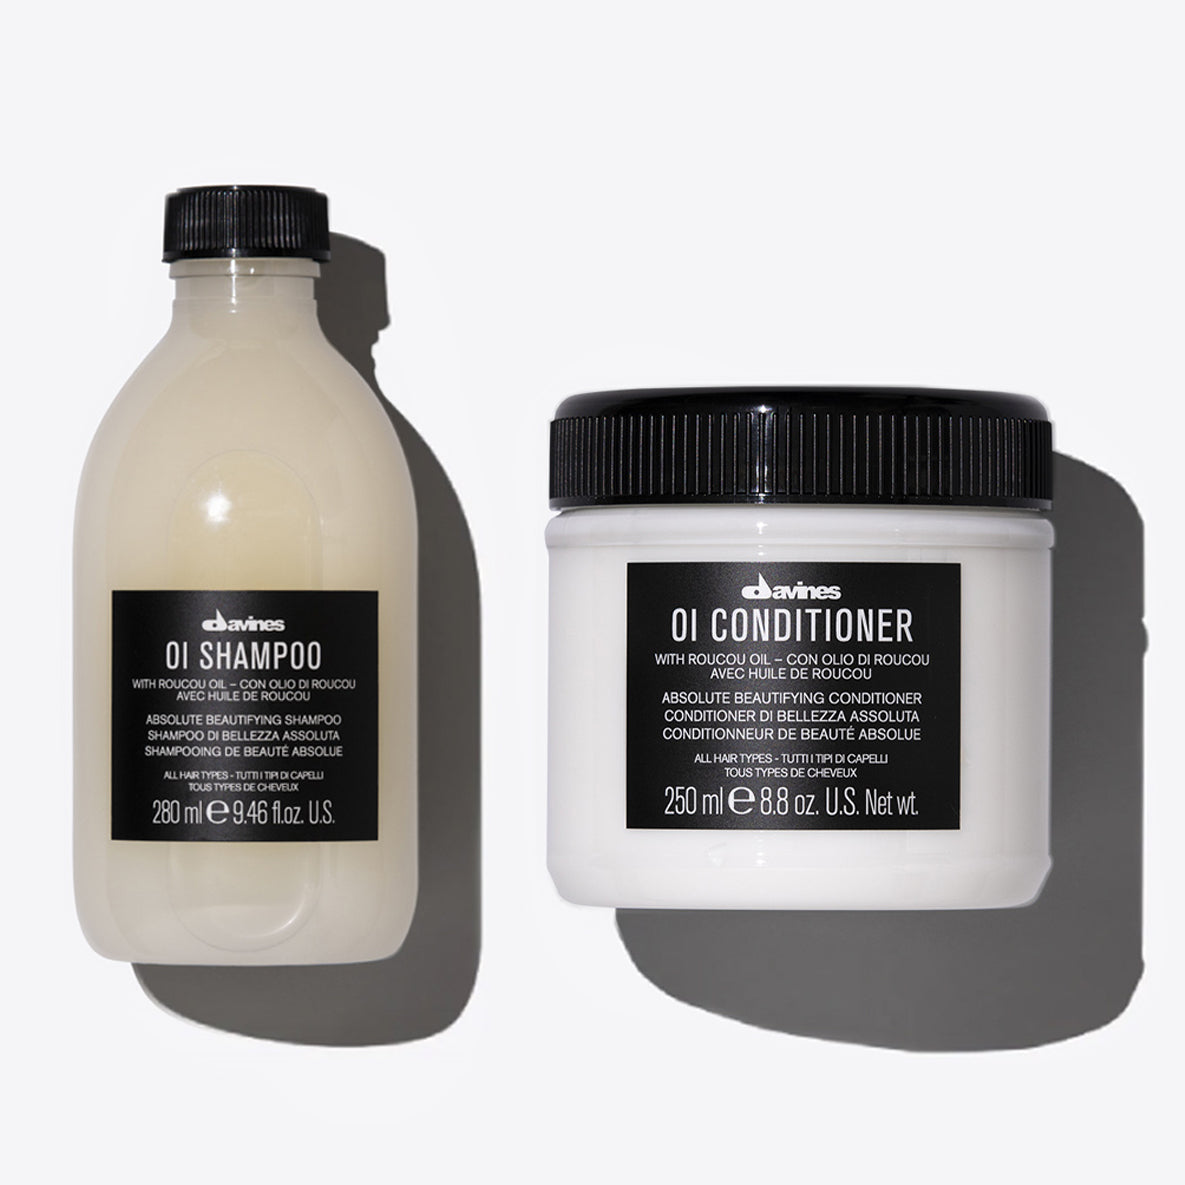 OI Shampoo &amp; Conditioner set 1  1 pz.Davines
